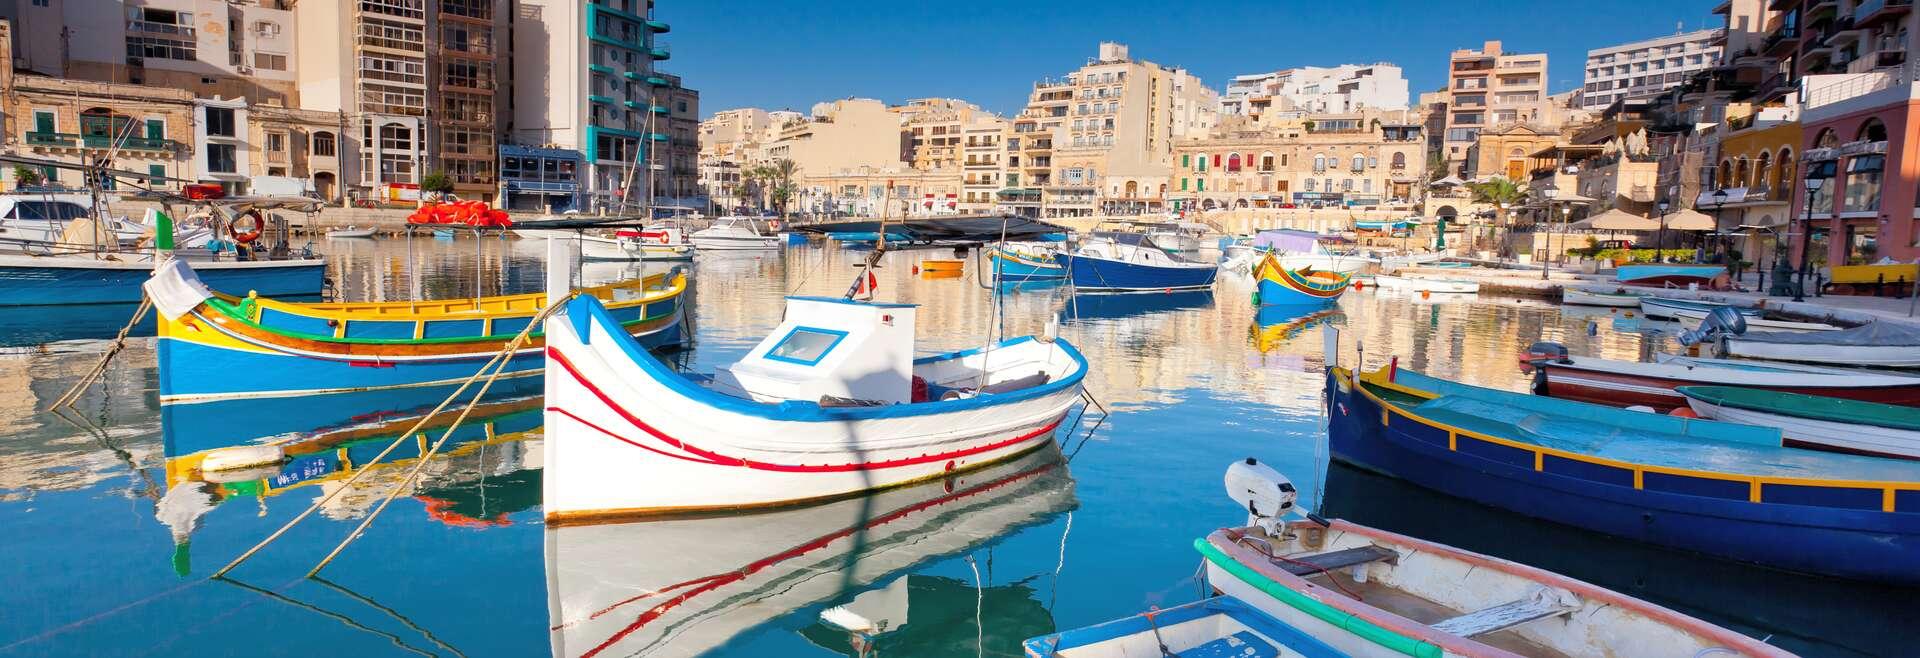 Séjour linguistique Malte, Sliema, port